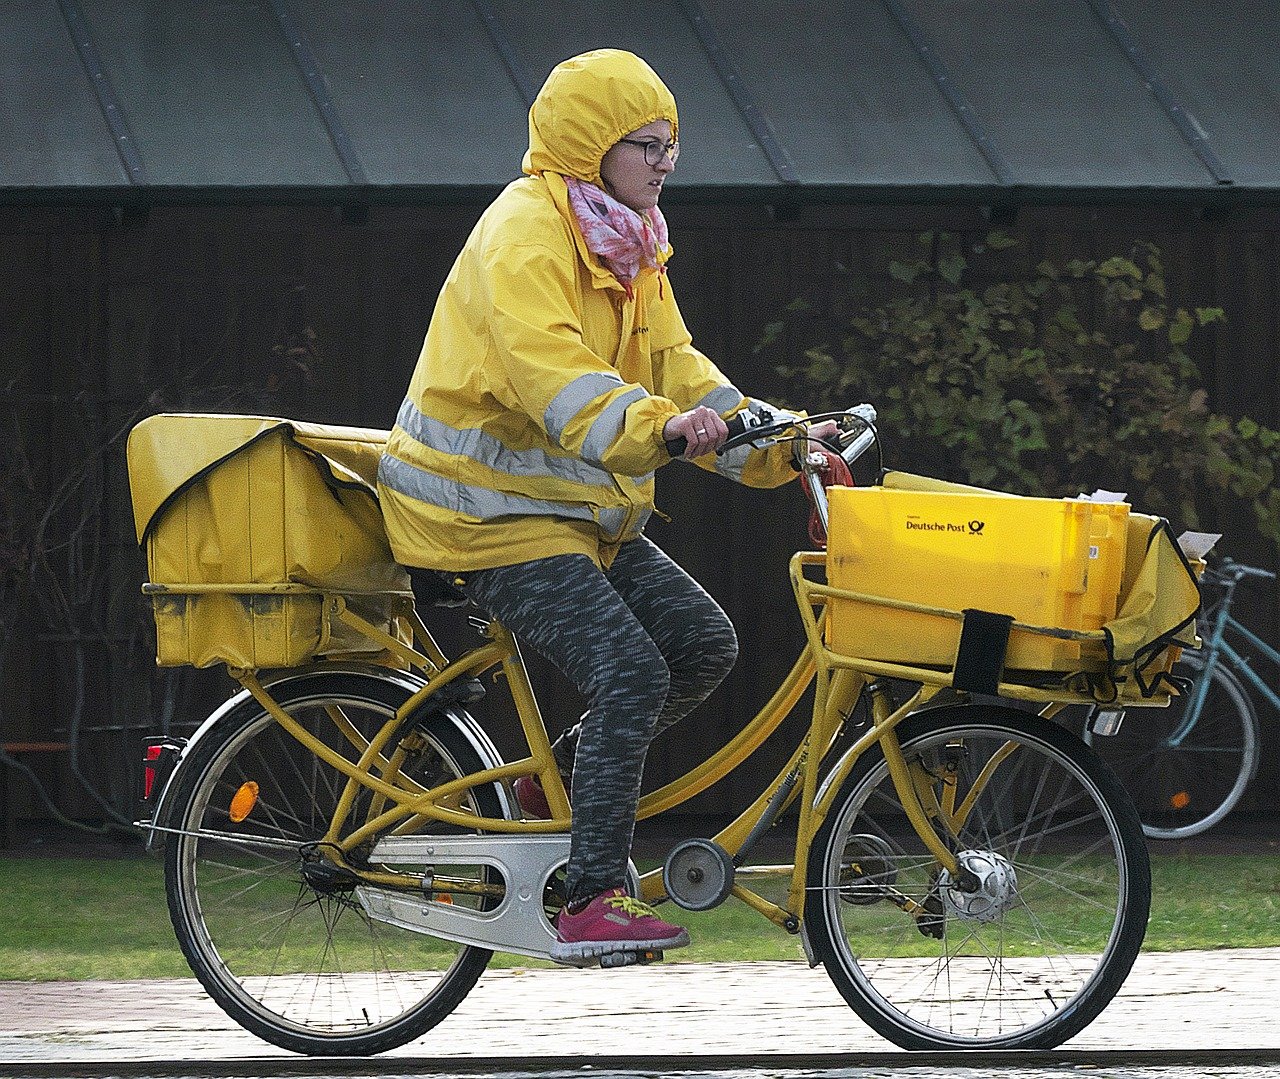 Carteira com jaqueta amarela em bicicleta pedalando. Na parte de trás da bicicleta, uma bolsa está presa. Na parte da frente da bicicleta, uma cesta contém diversos pacotes.